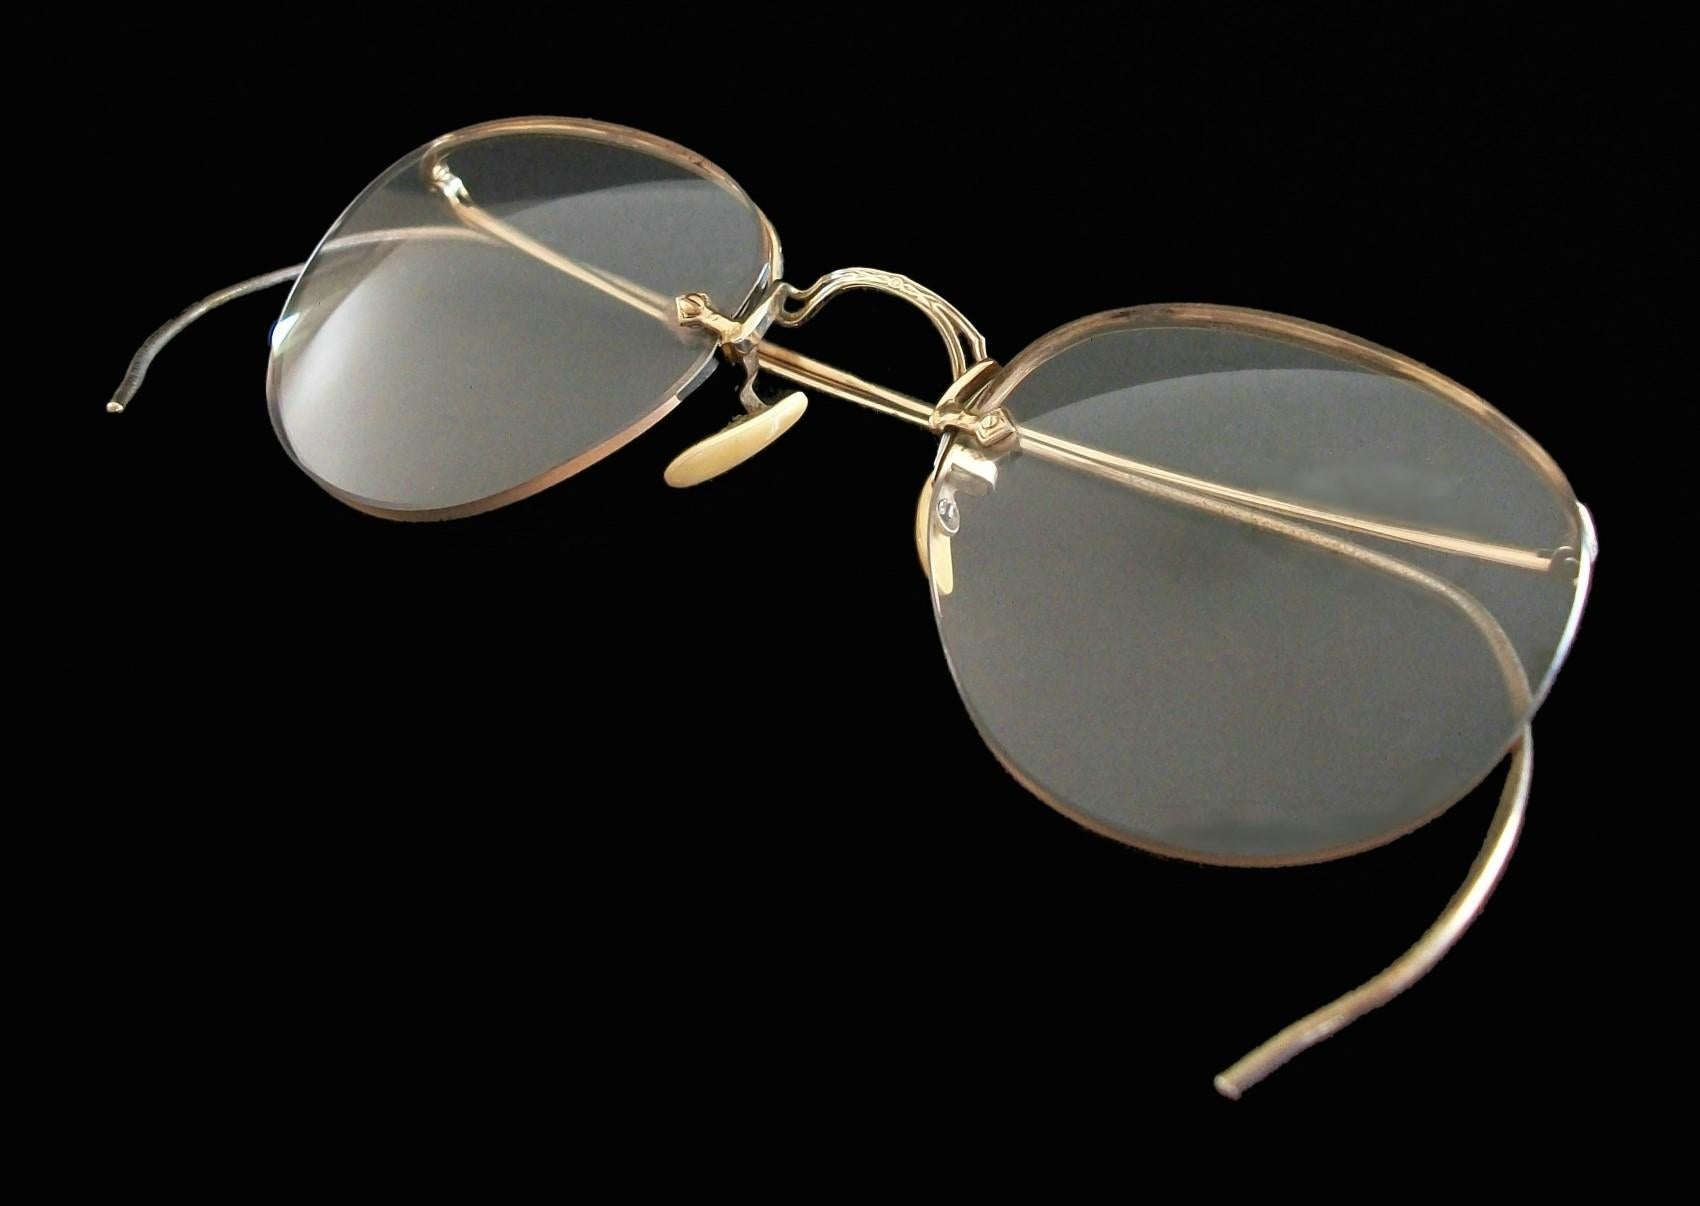 BDG - Vintage 10K Gelbgold Kinderbrille - mit randlosen Korrekturgläsern - feiner Qualitätsrahmen mit edwardianischen Details - signiert 10K BDG (unbekannter / nicht identifizierter Hersteller - siehe Fotos) - Originalverpackung mit Poststempel